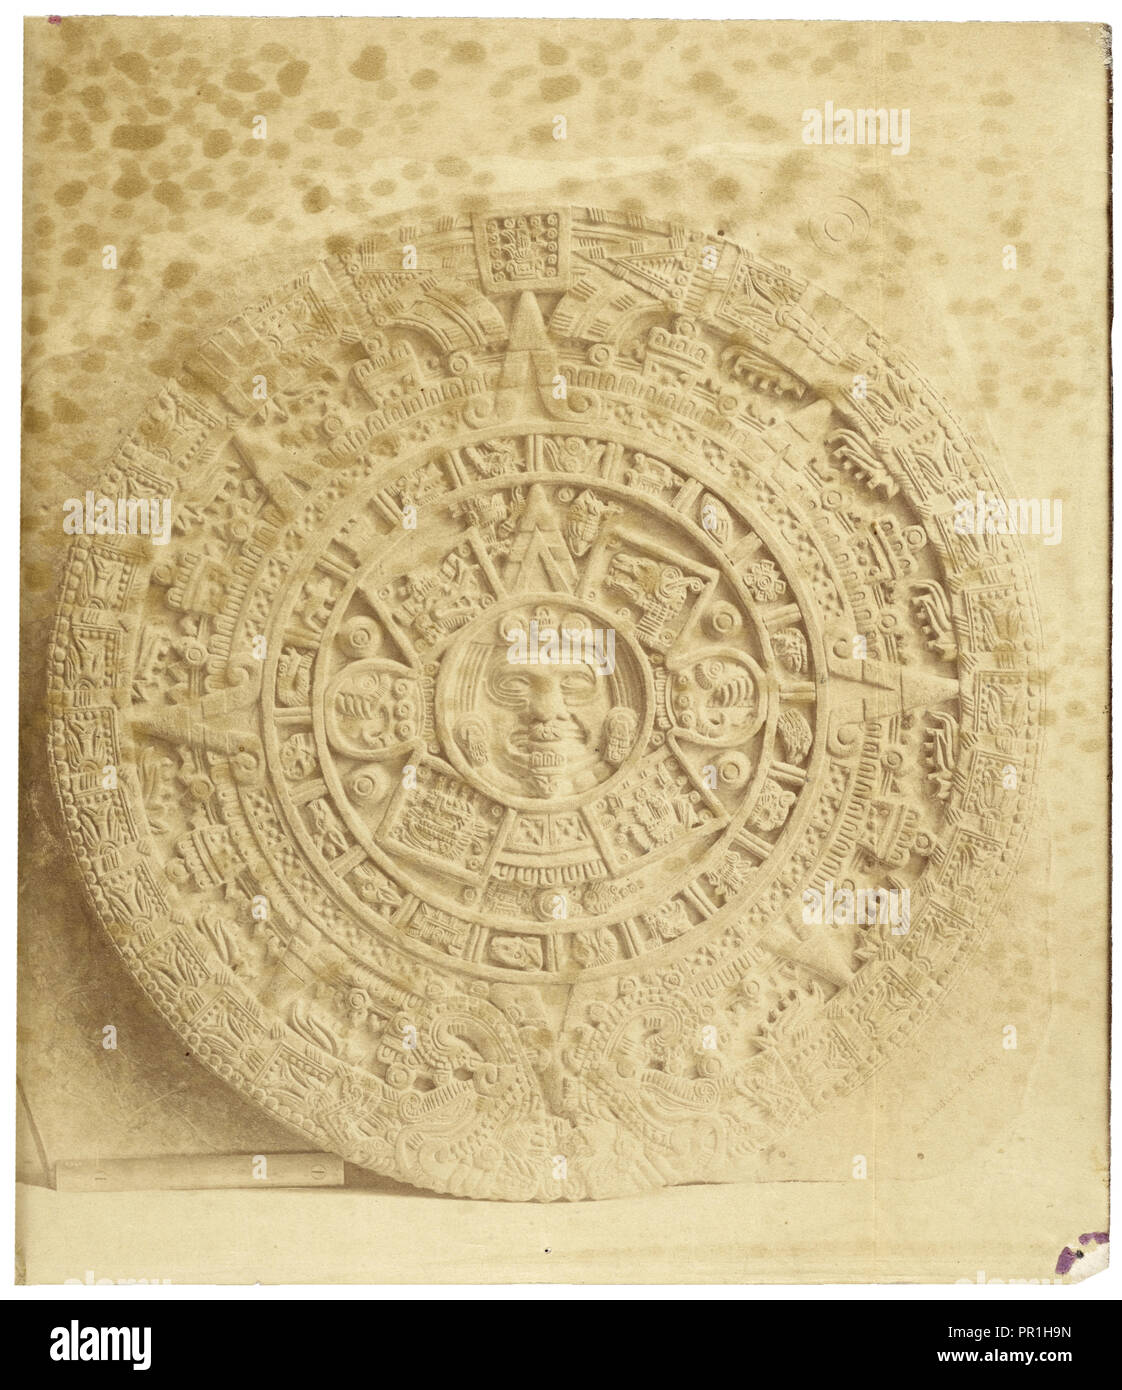 Abadiano's cast of the Aztec calendar stone, Estudio arqueológico y jeroglífico del Calendario ó gran libro astronómico Stock Photo